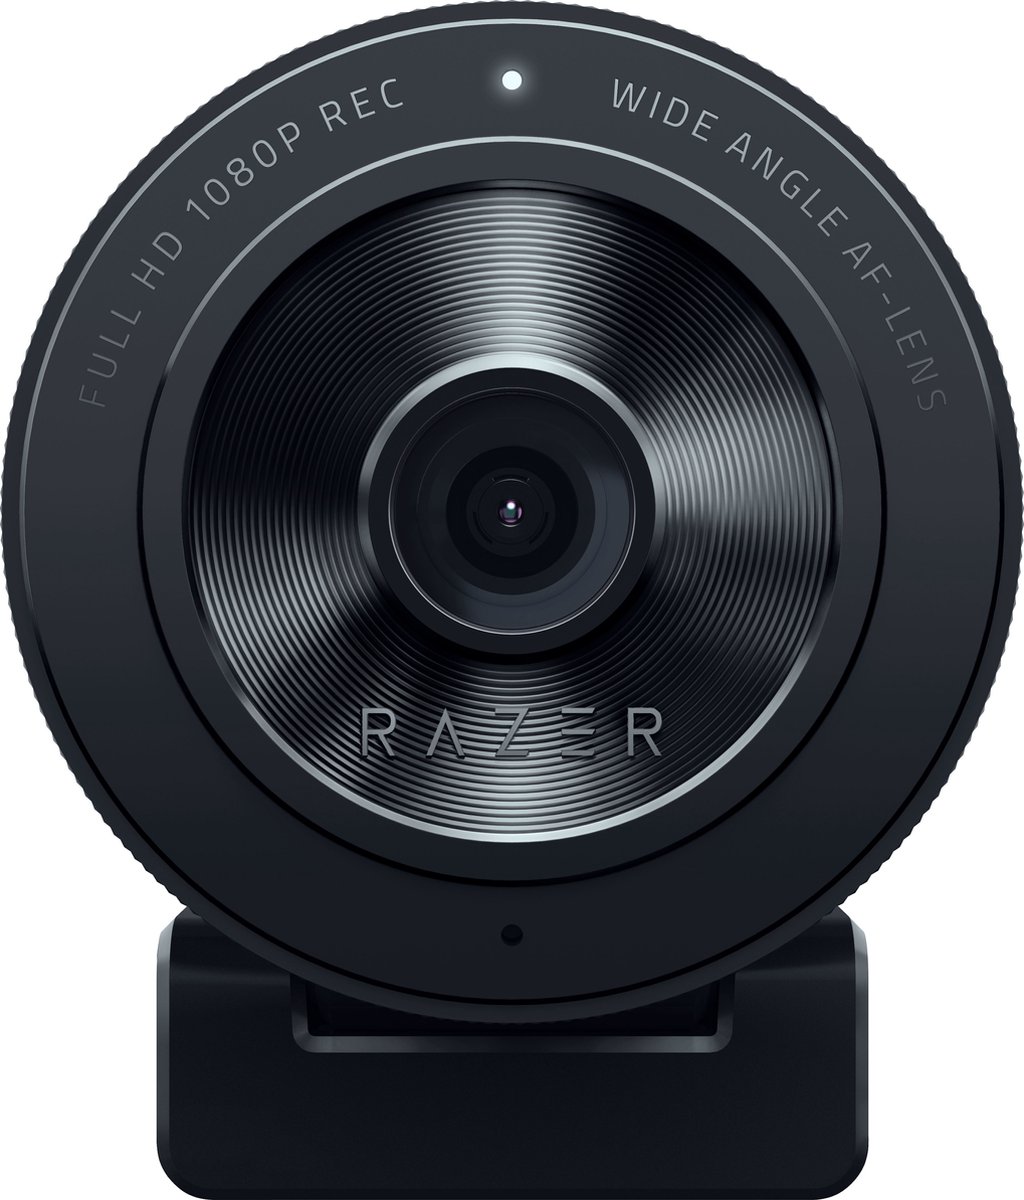 Razer Kiyo Style Gaming Webcam - China Web Camera and Video Camera